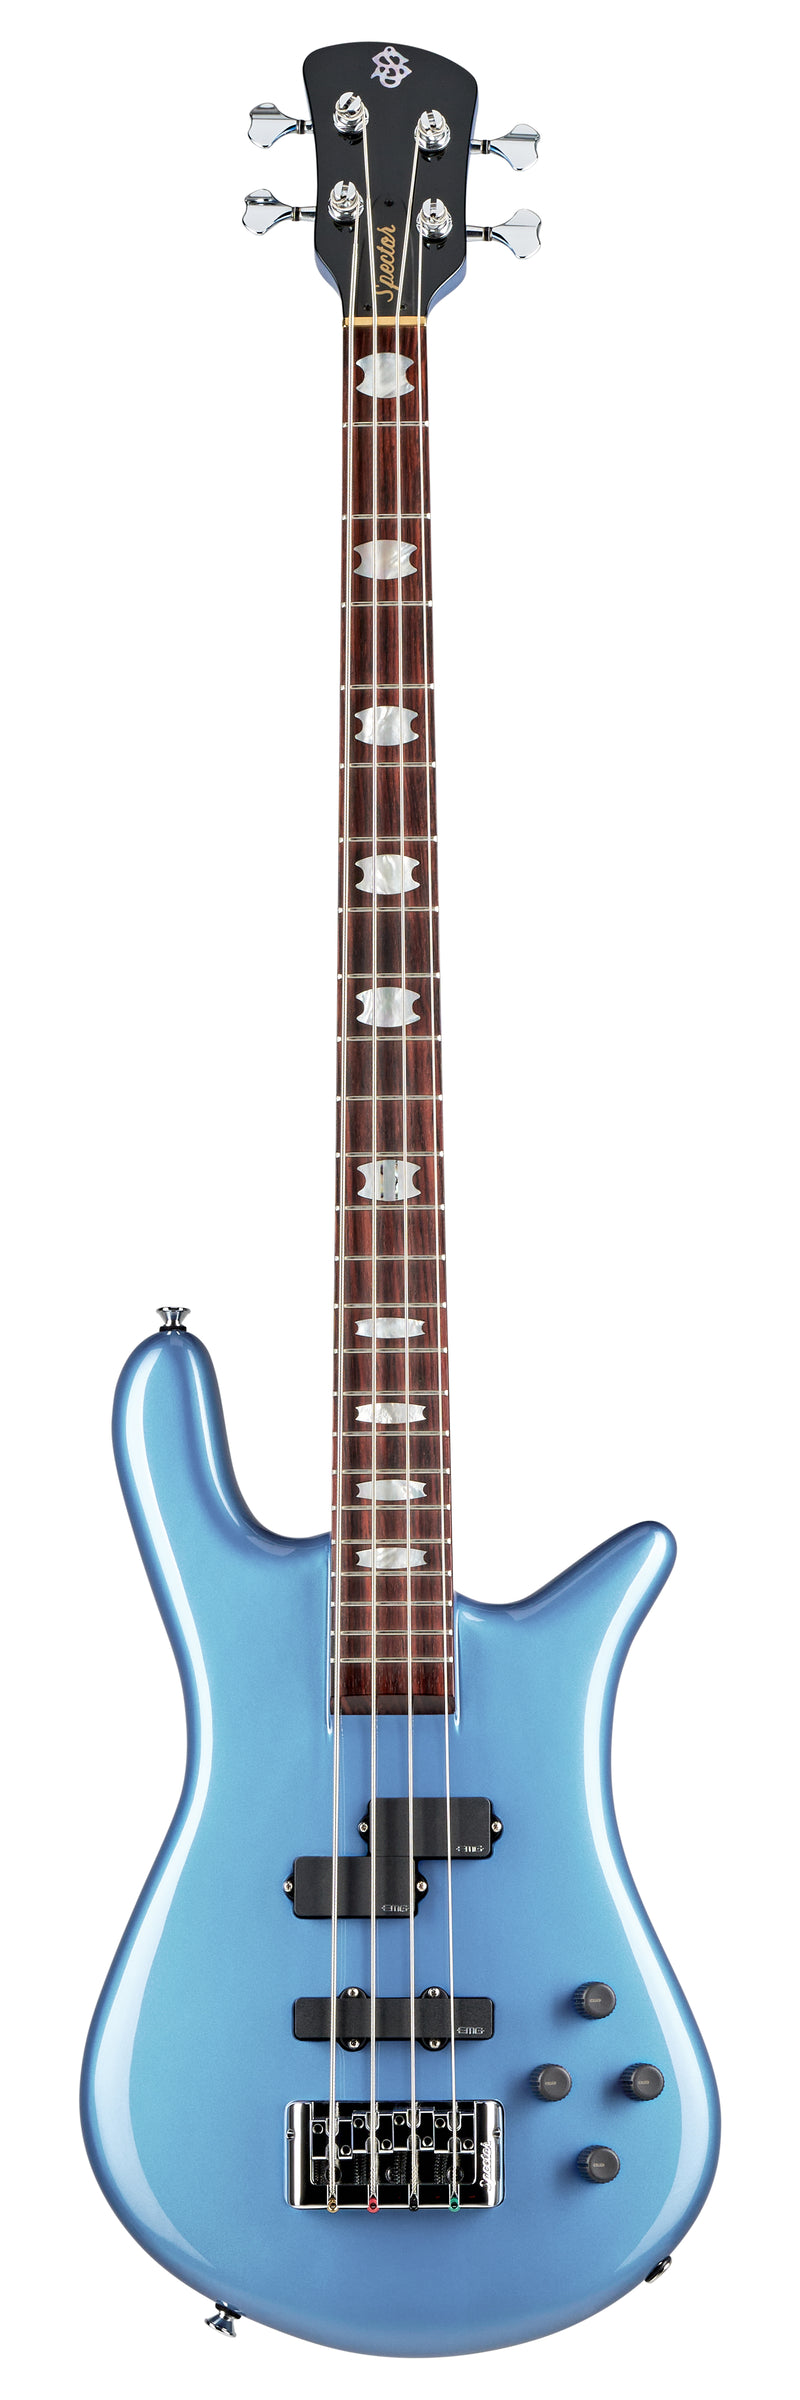 Spector EURO 4 CLASSIC 4-String Bass Guitar (Metallic Blue Gloss)